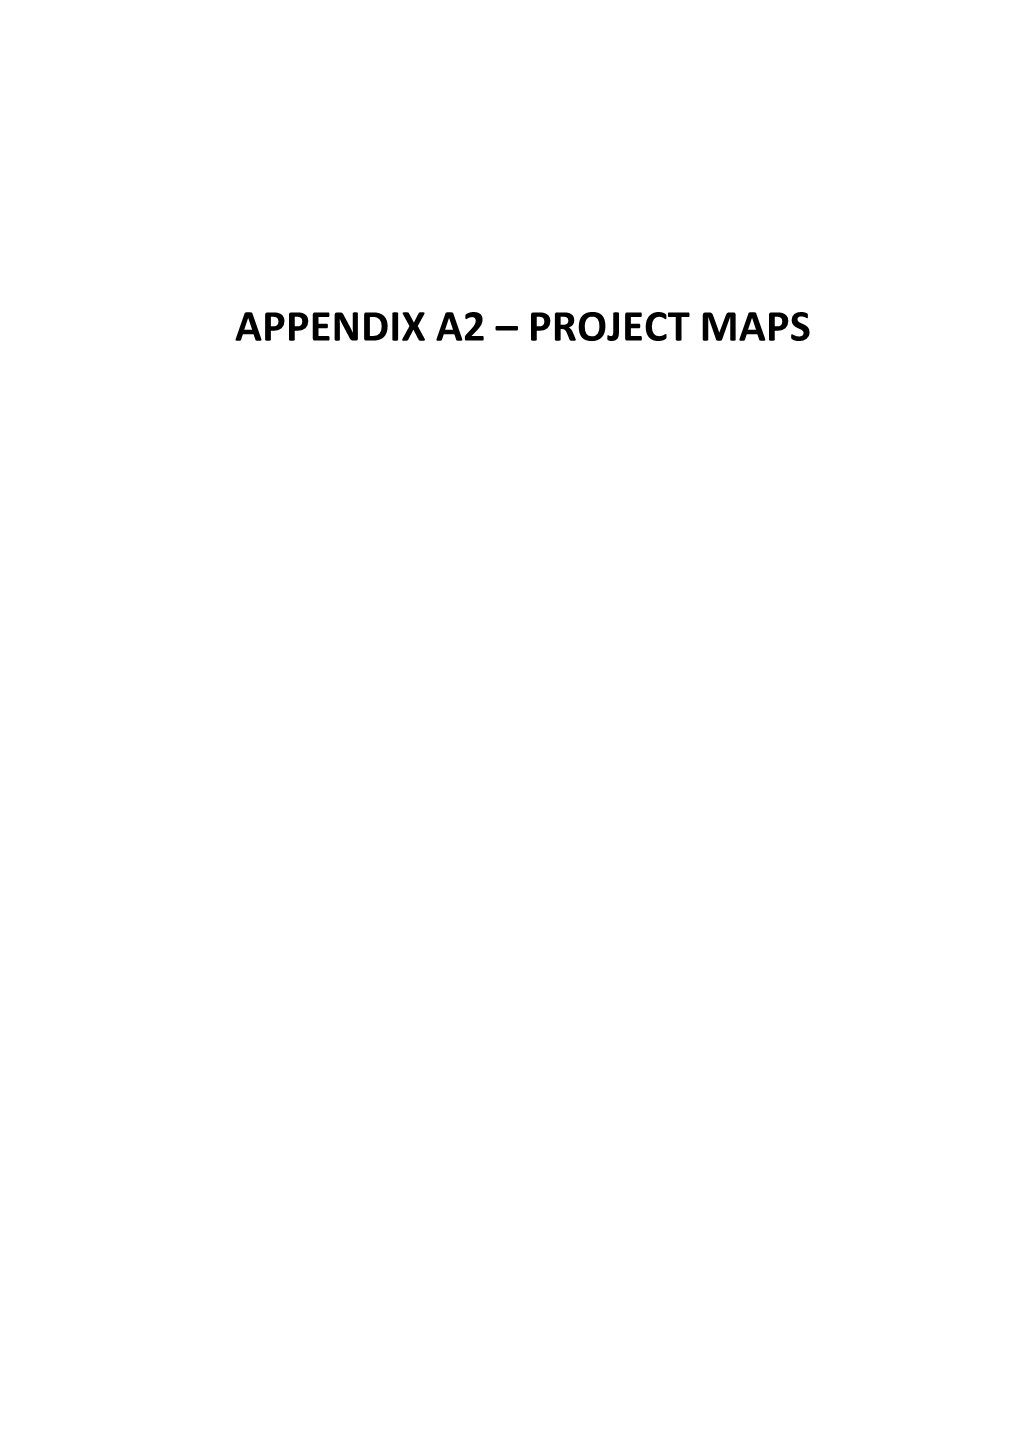 Appendix A2 – Project Maps 134°0'0"E 135°0'0"E 136°0'0"E 137°0'0"E 138°0'0"E 139°0'0"E 140°0'0"E